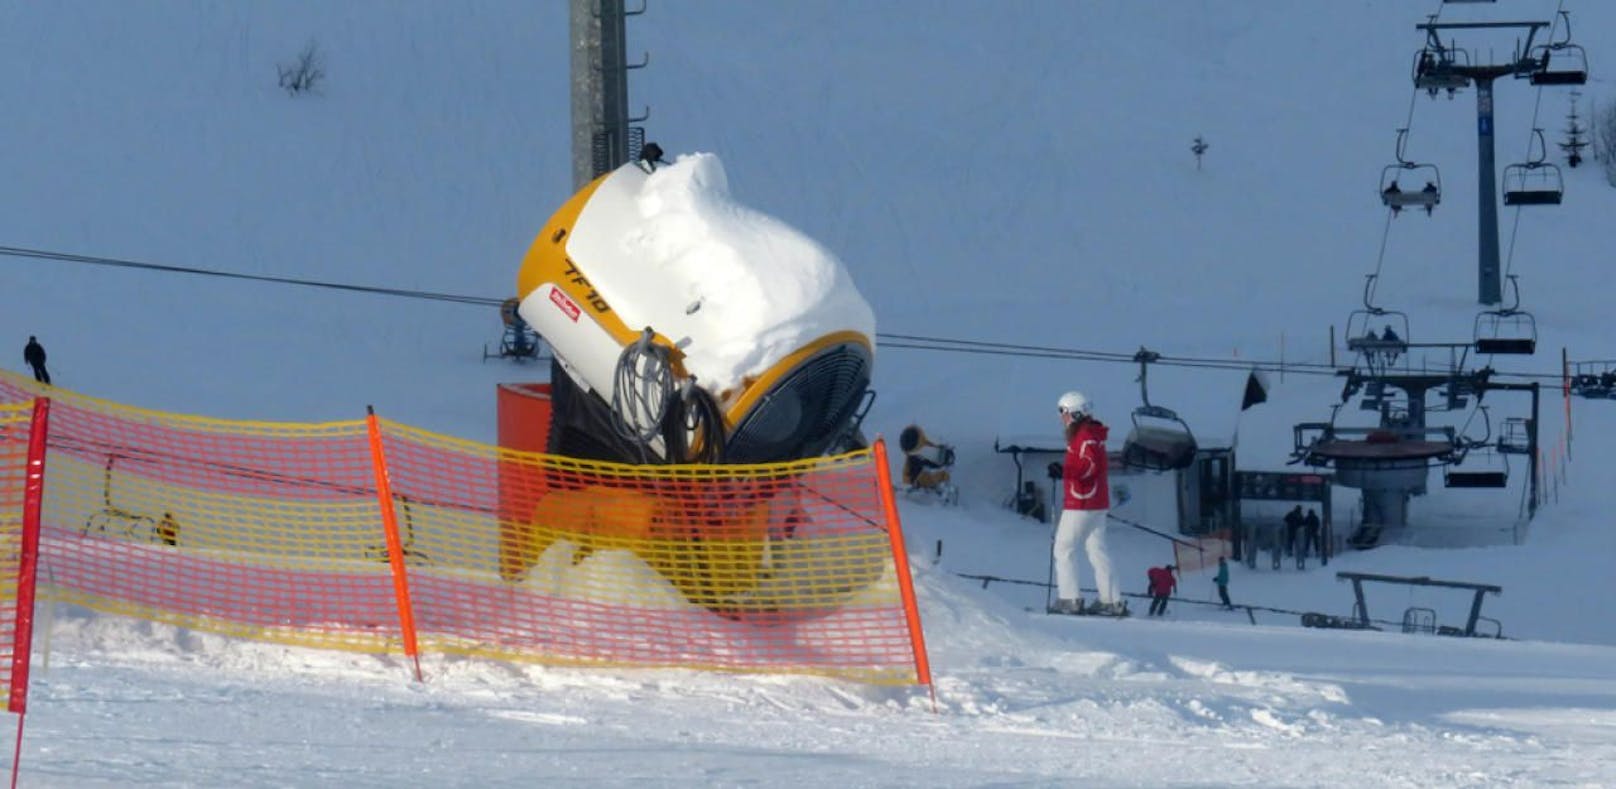 Der Skifahrer erlitt bei dem Crash mit der Schneekanone schwere Beinverletzungen